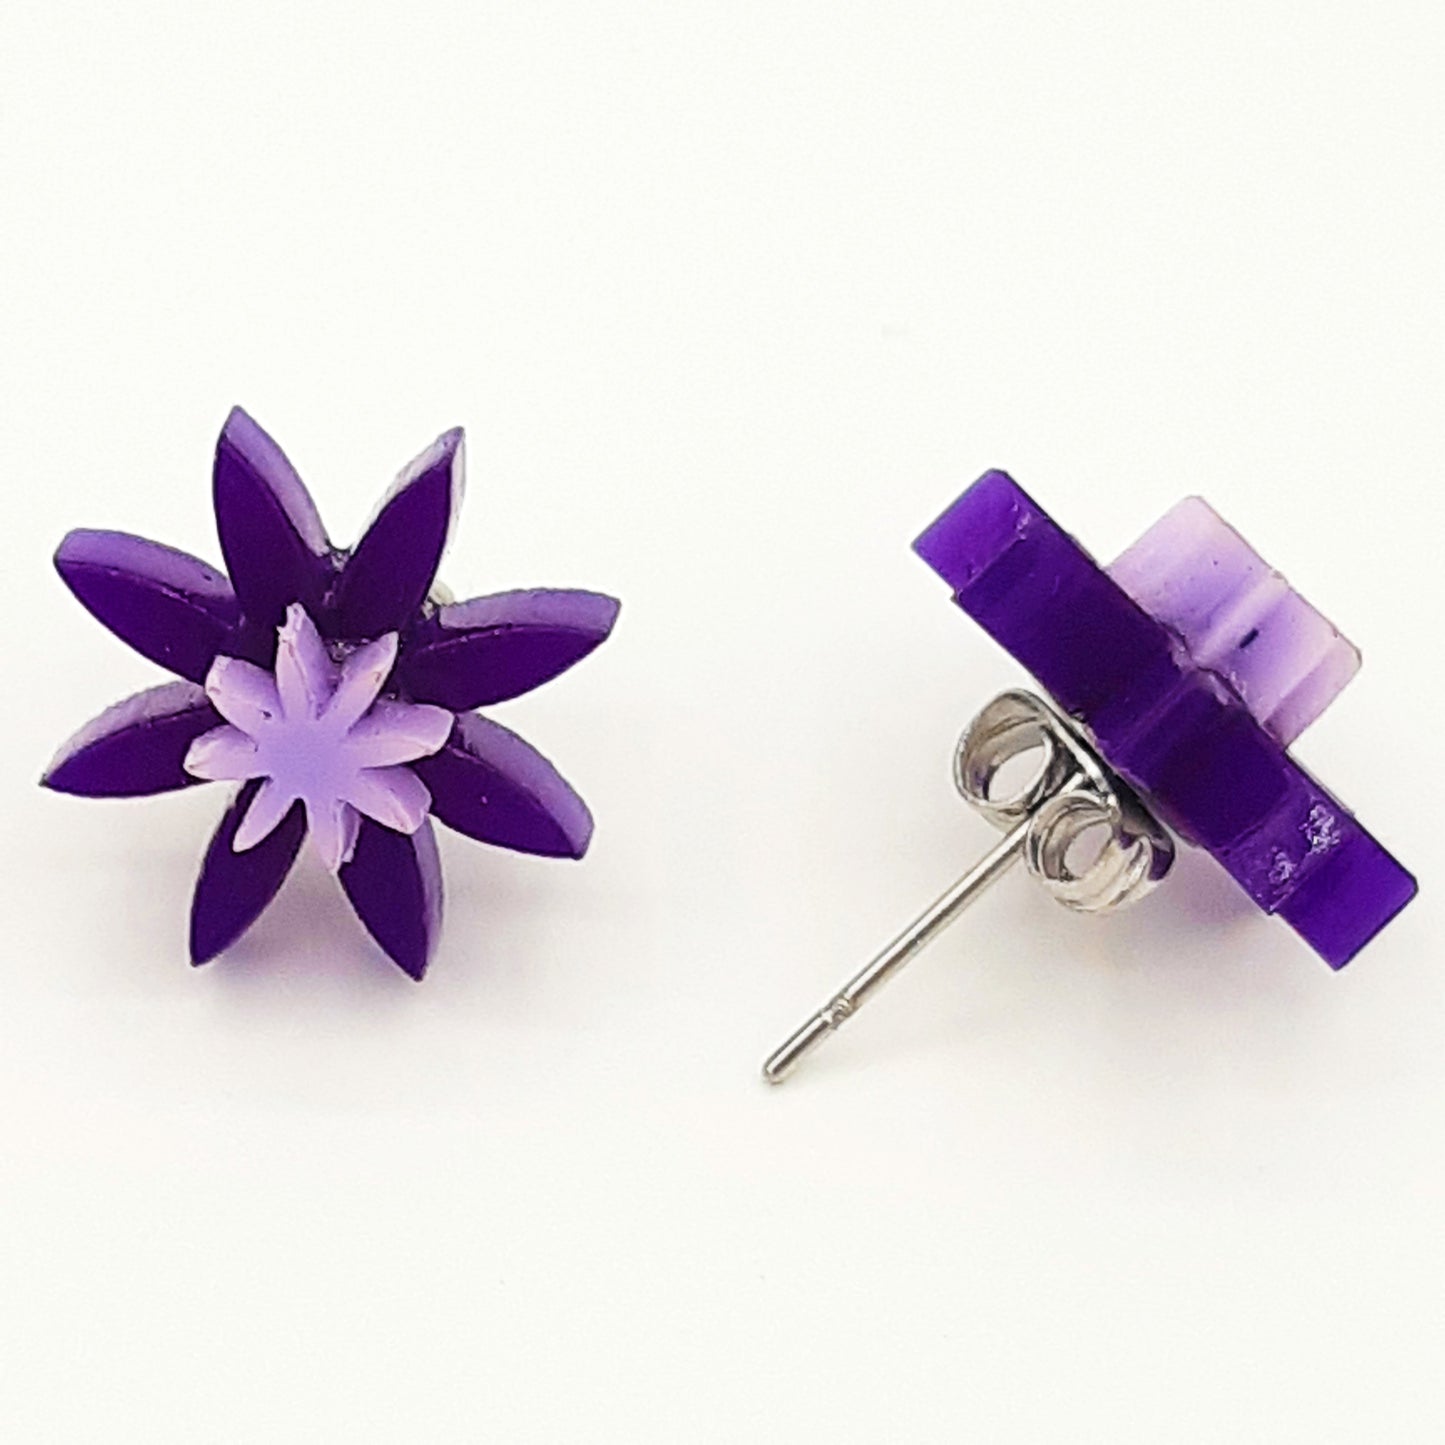 Flower laser cut acrylic earrings - daisy - purple